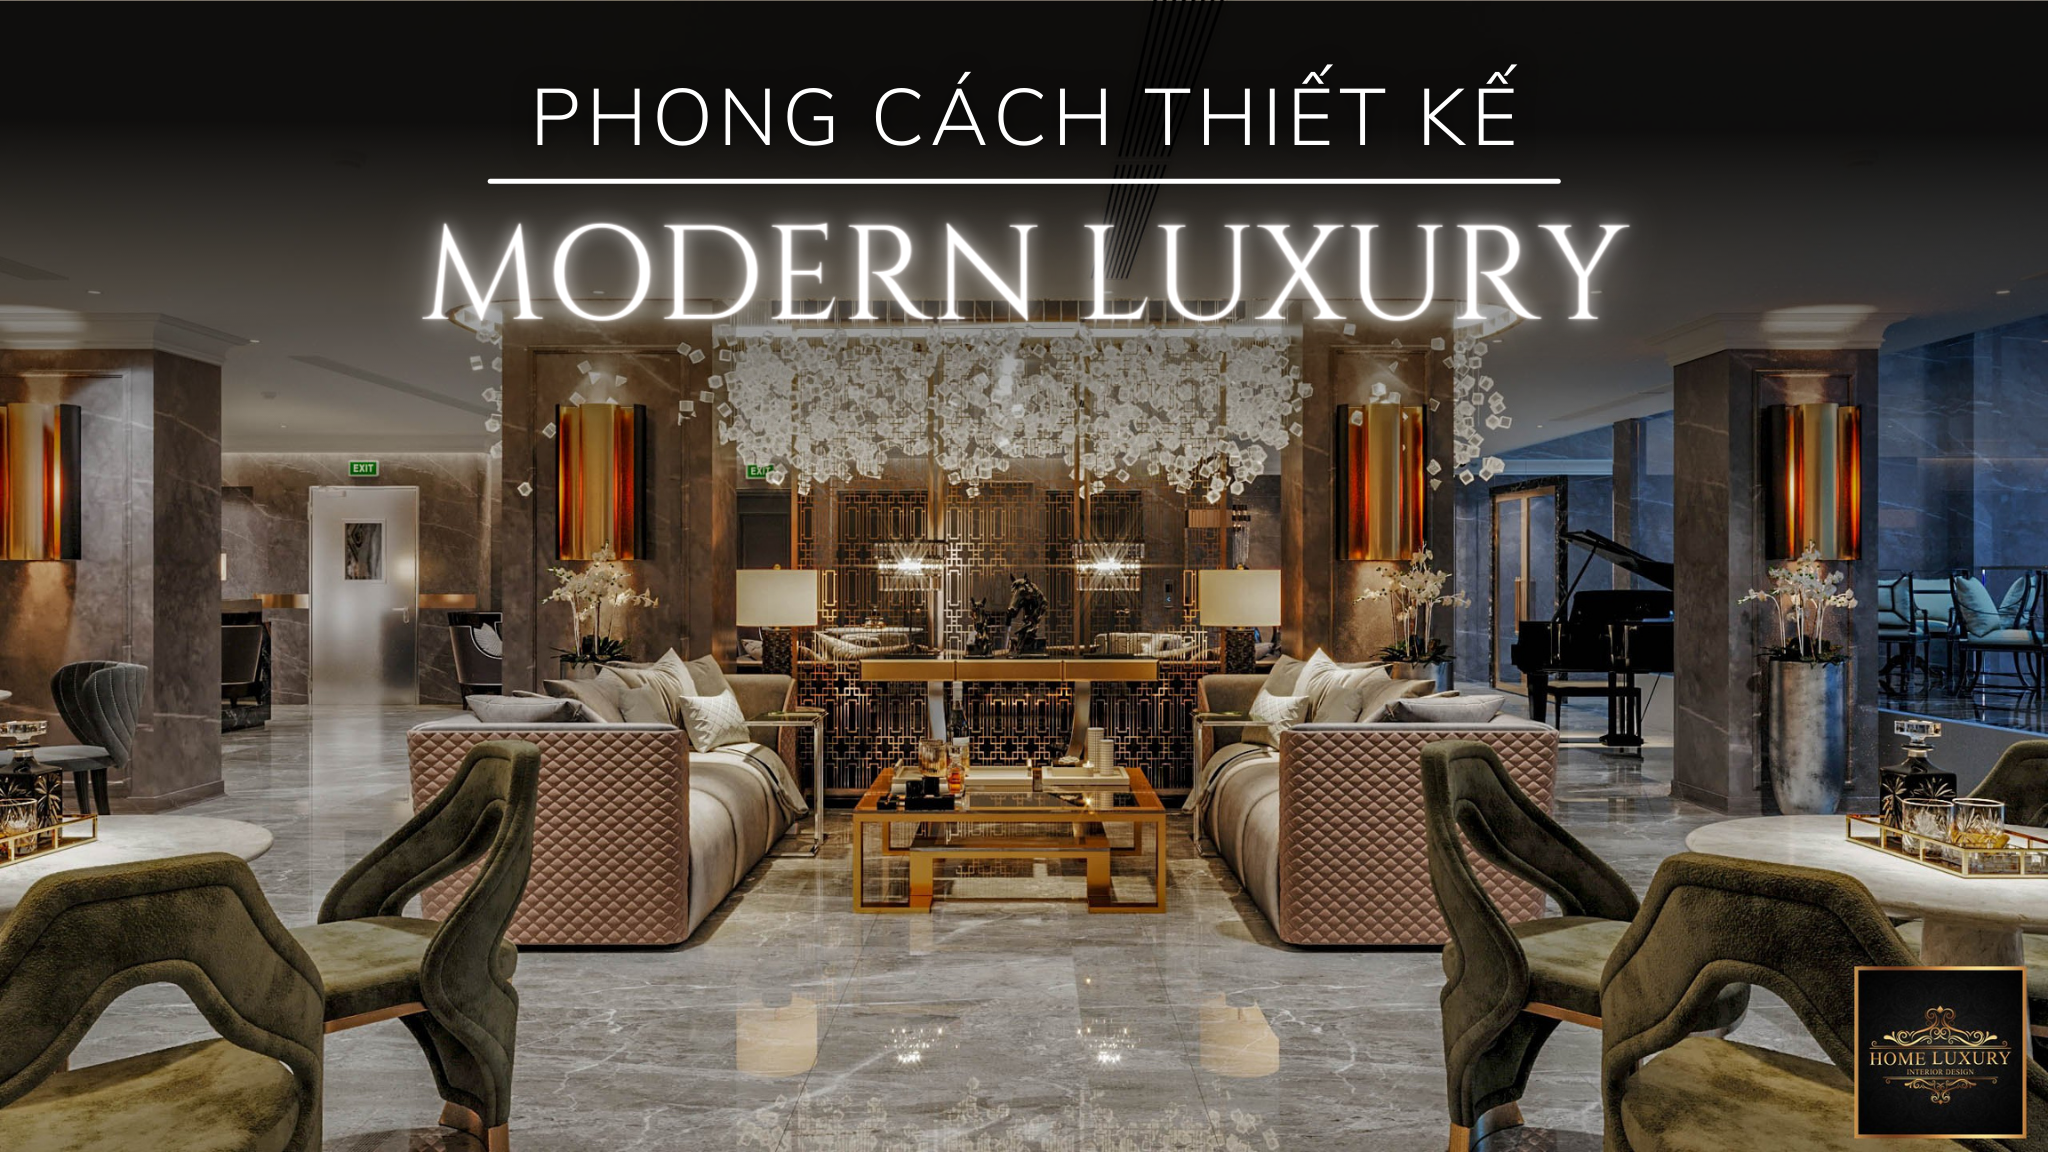 Thiết kế nội thất phong cách modern luxury đẹp